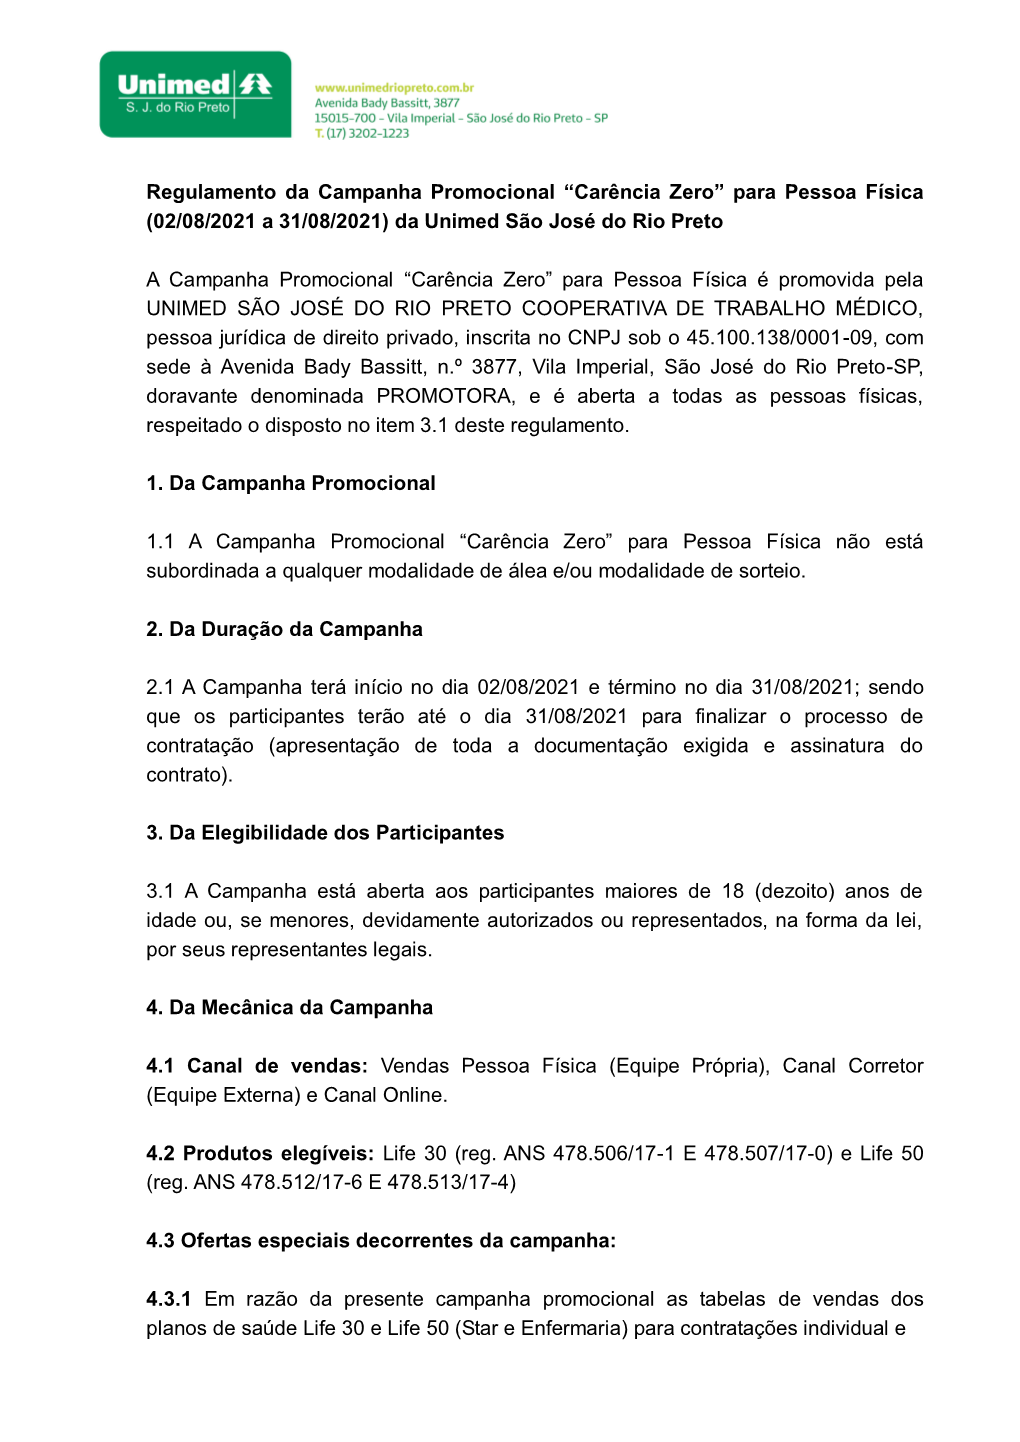 Regulamento Da Campanha Promocional “Carência Zero” Para Pessoa Física (02/08/2021 a 31/08/2021) Da Unimed São José Do Rio Preto